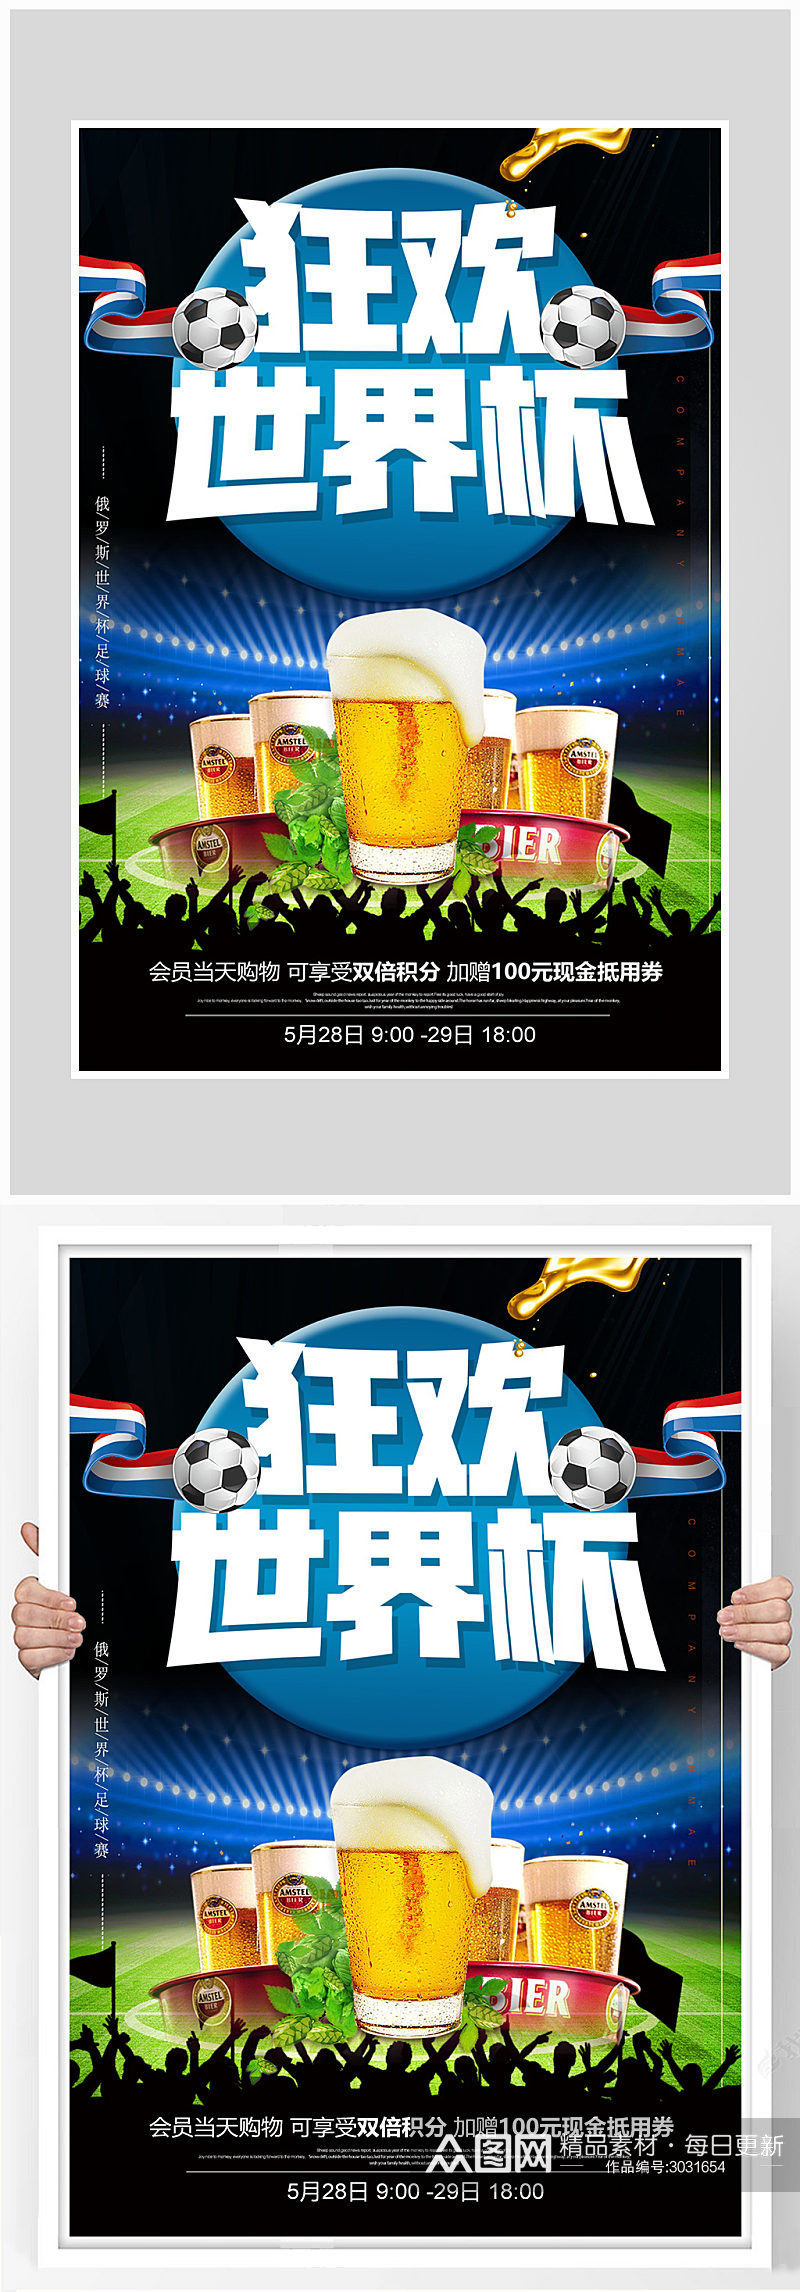 世界杯狂欢足球比赛海报设计素材